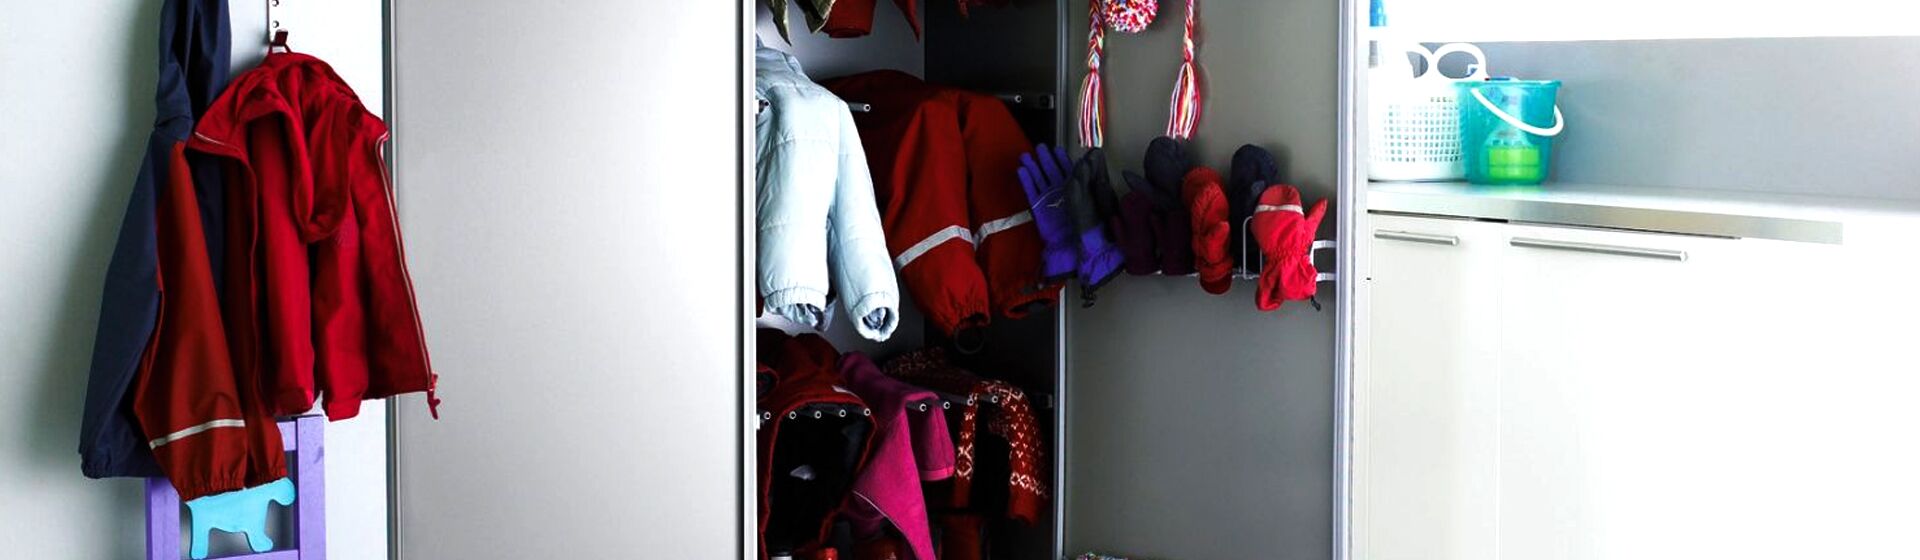 Сушка детской одежды и обуви в шкафу ASKO